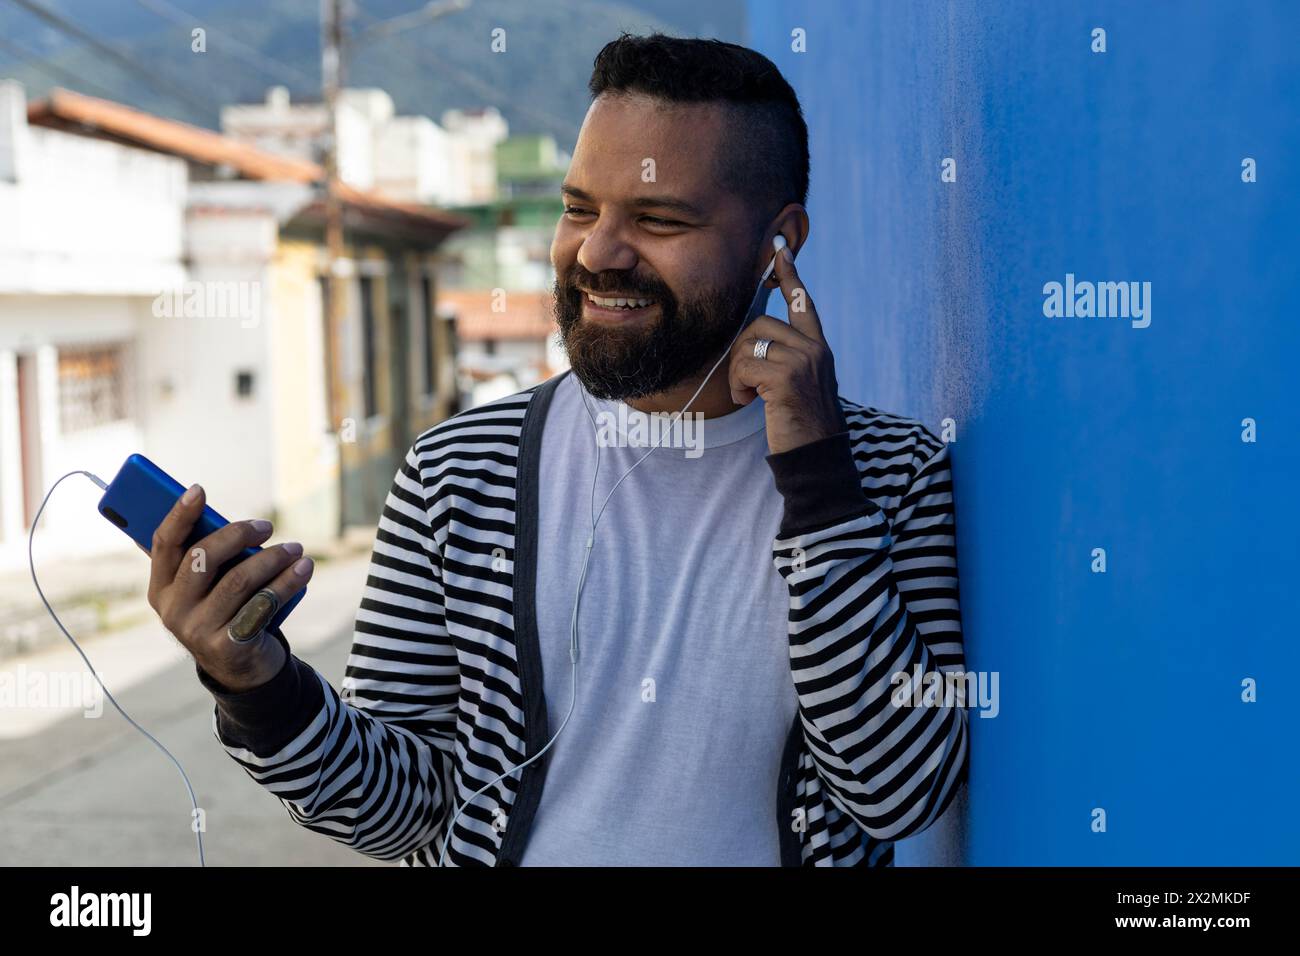 Mâle adulte (39 ans) barbe, moyen plat, utilise son téléphone portable avec un geste de bonheur et de positivisme. Habillé en pull rayé, t-shirt blanc, bleu Banque D'Images